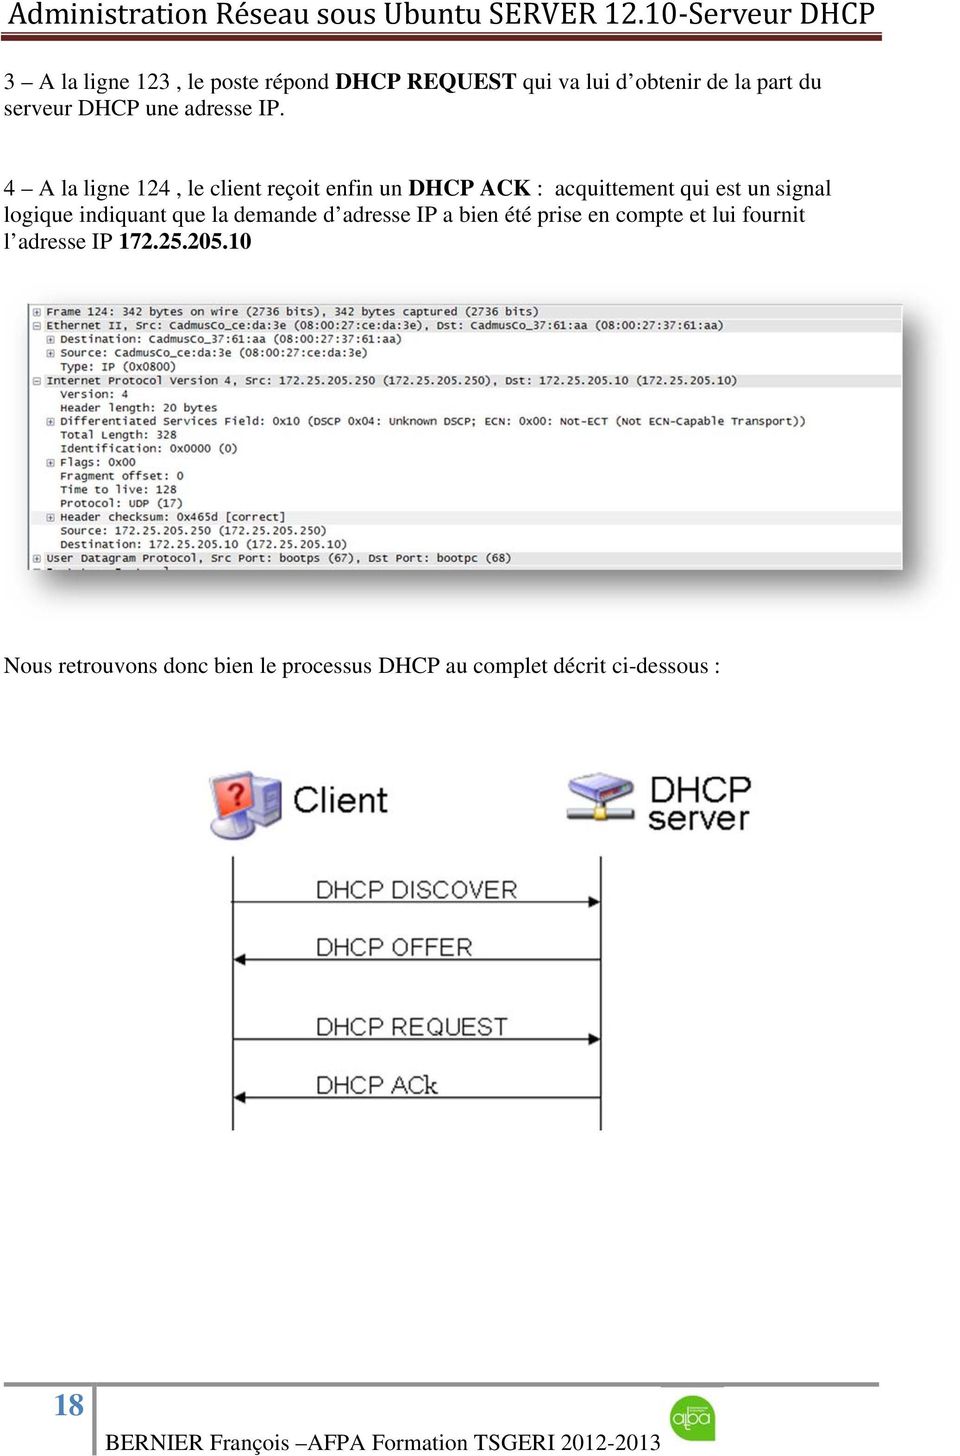 4 A la ligne 124, le client reçoit enfin un DHCP ACK : acquittement qui est un signal logique